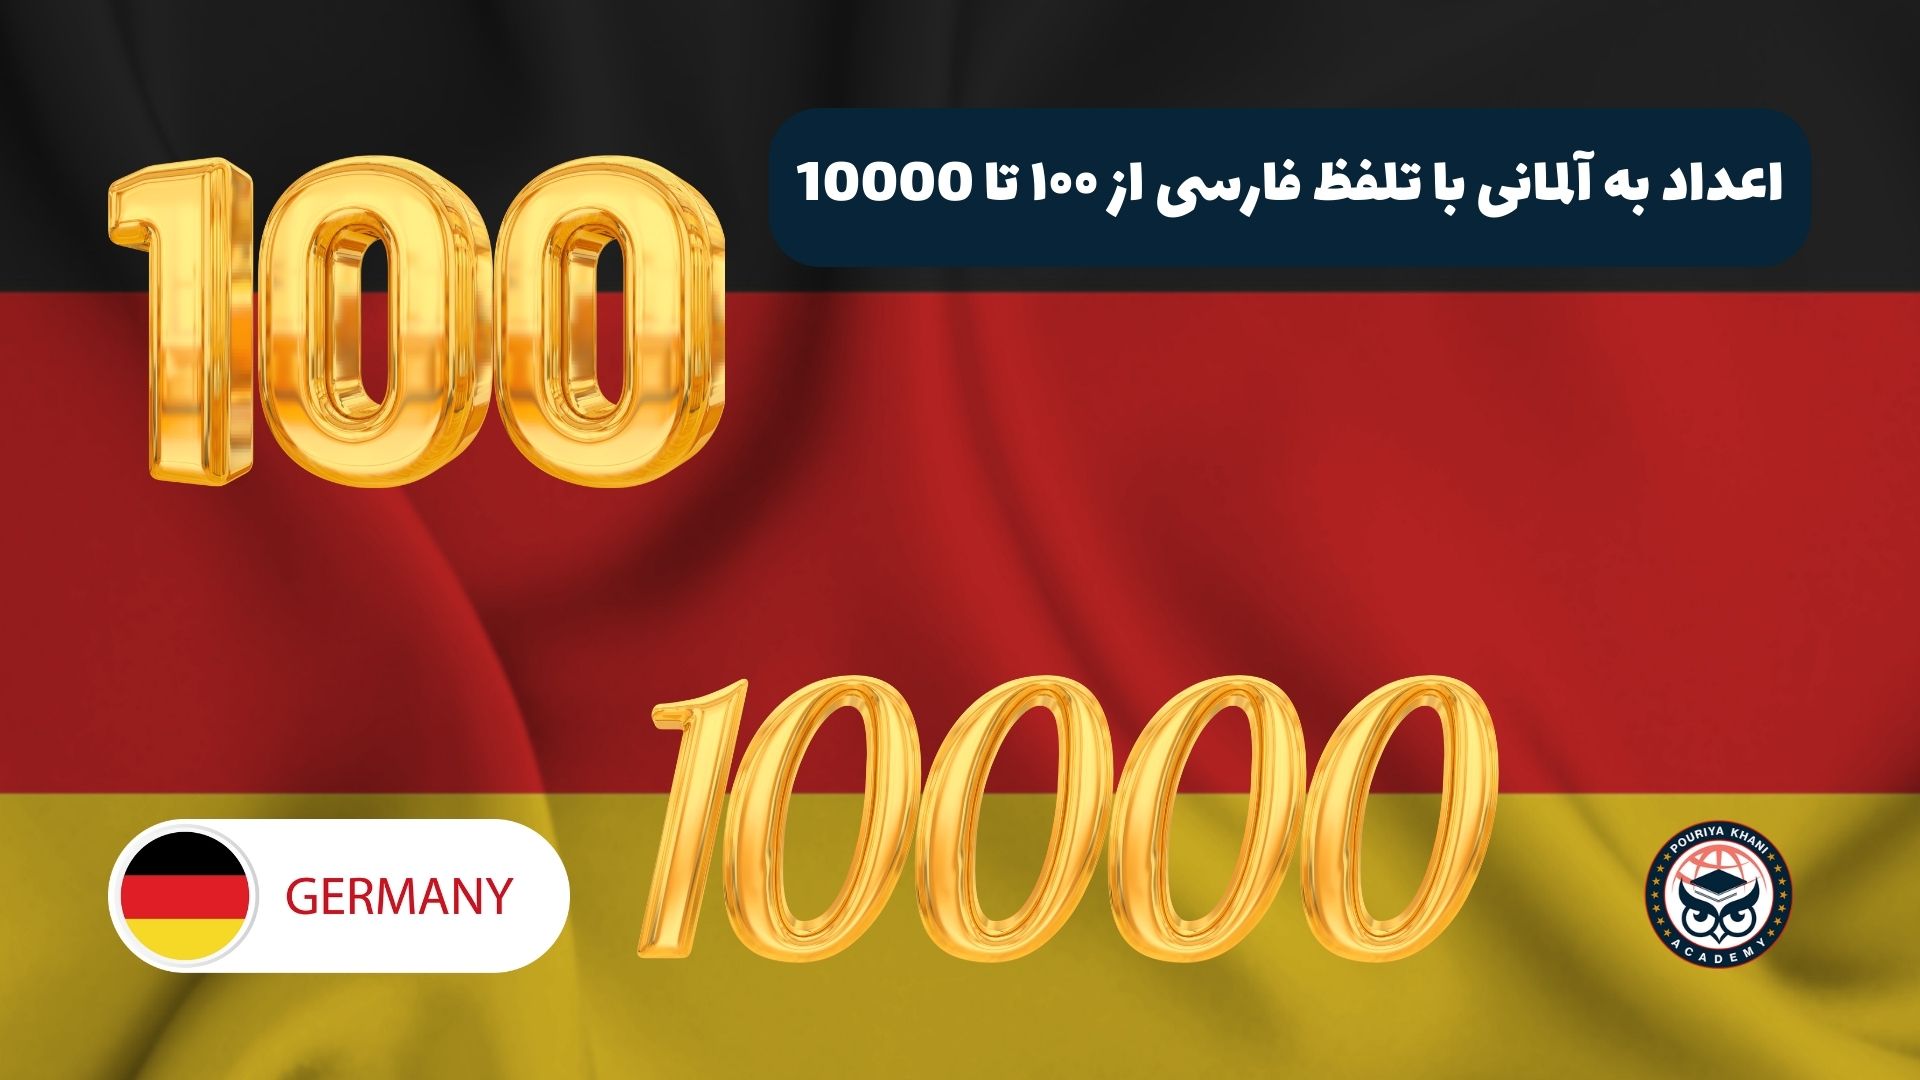 اعداد به آلمانی با تلفظ فارسی از ۱۰۰ تا 10000